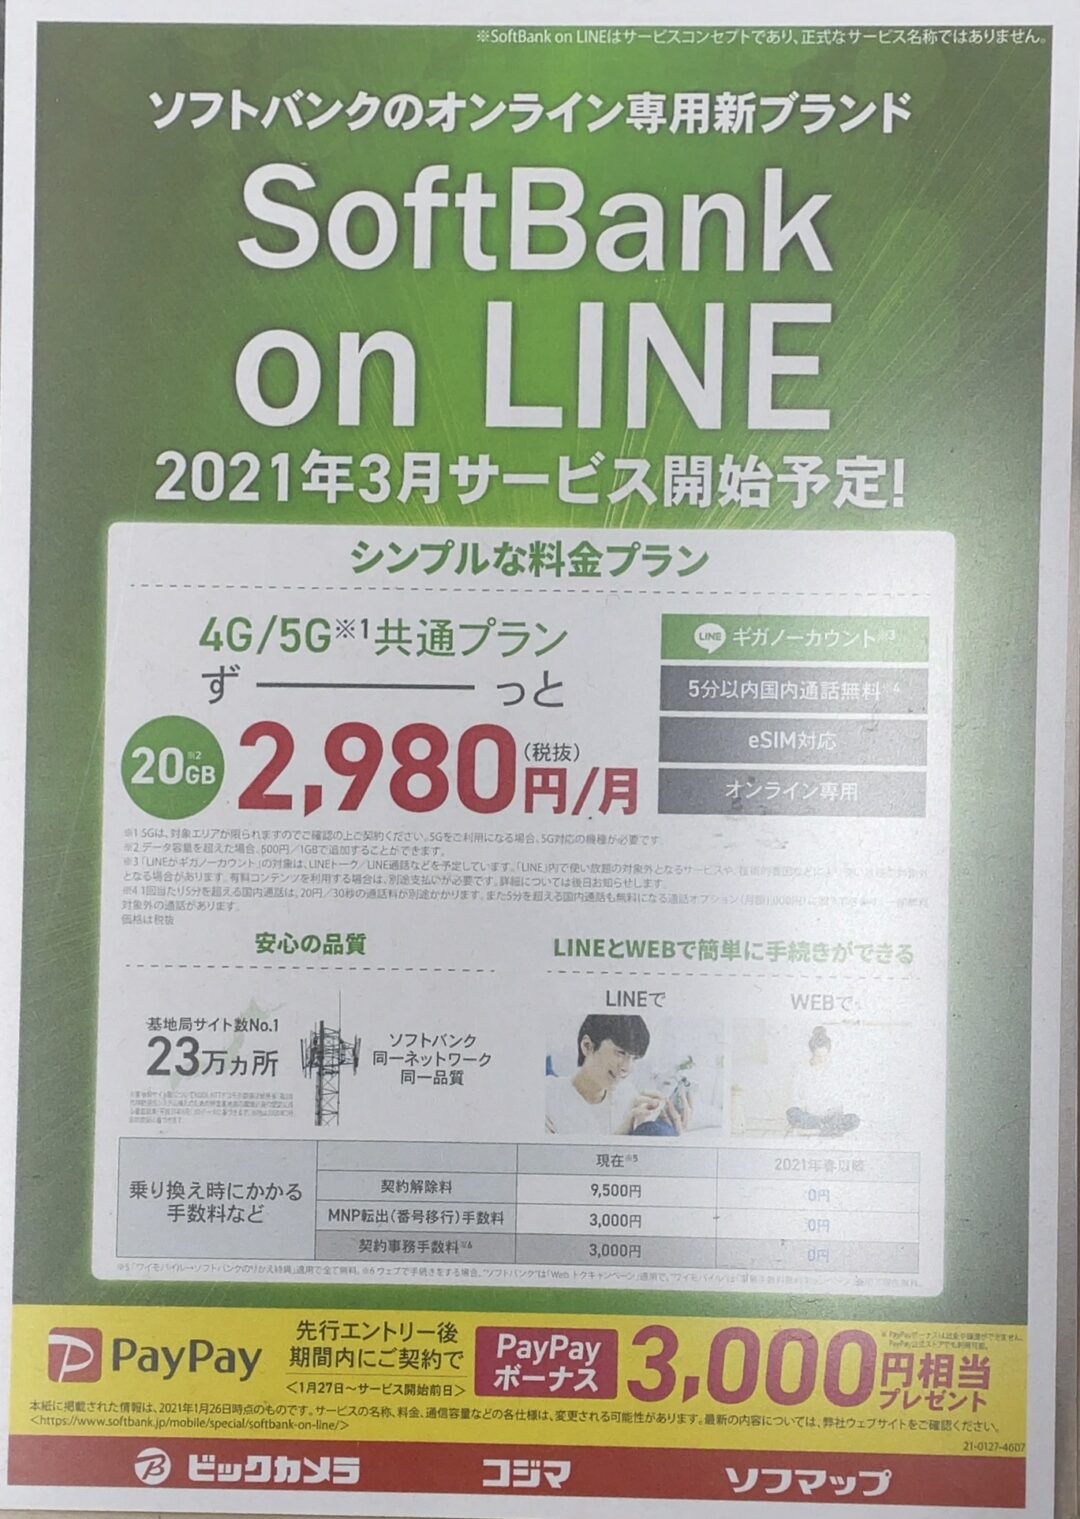 ソフトバンクショップや家電量販店でもソフトバンクの Softbank On Line の案内を確認 先行エントリーで3 000円paypayで還元